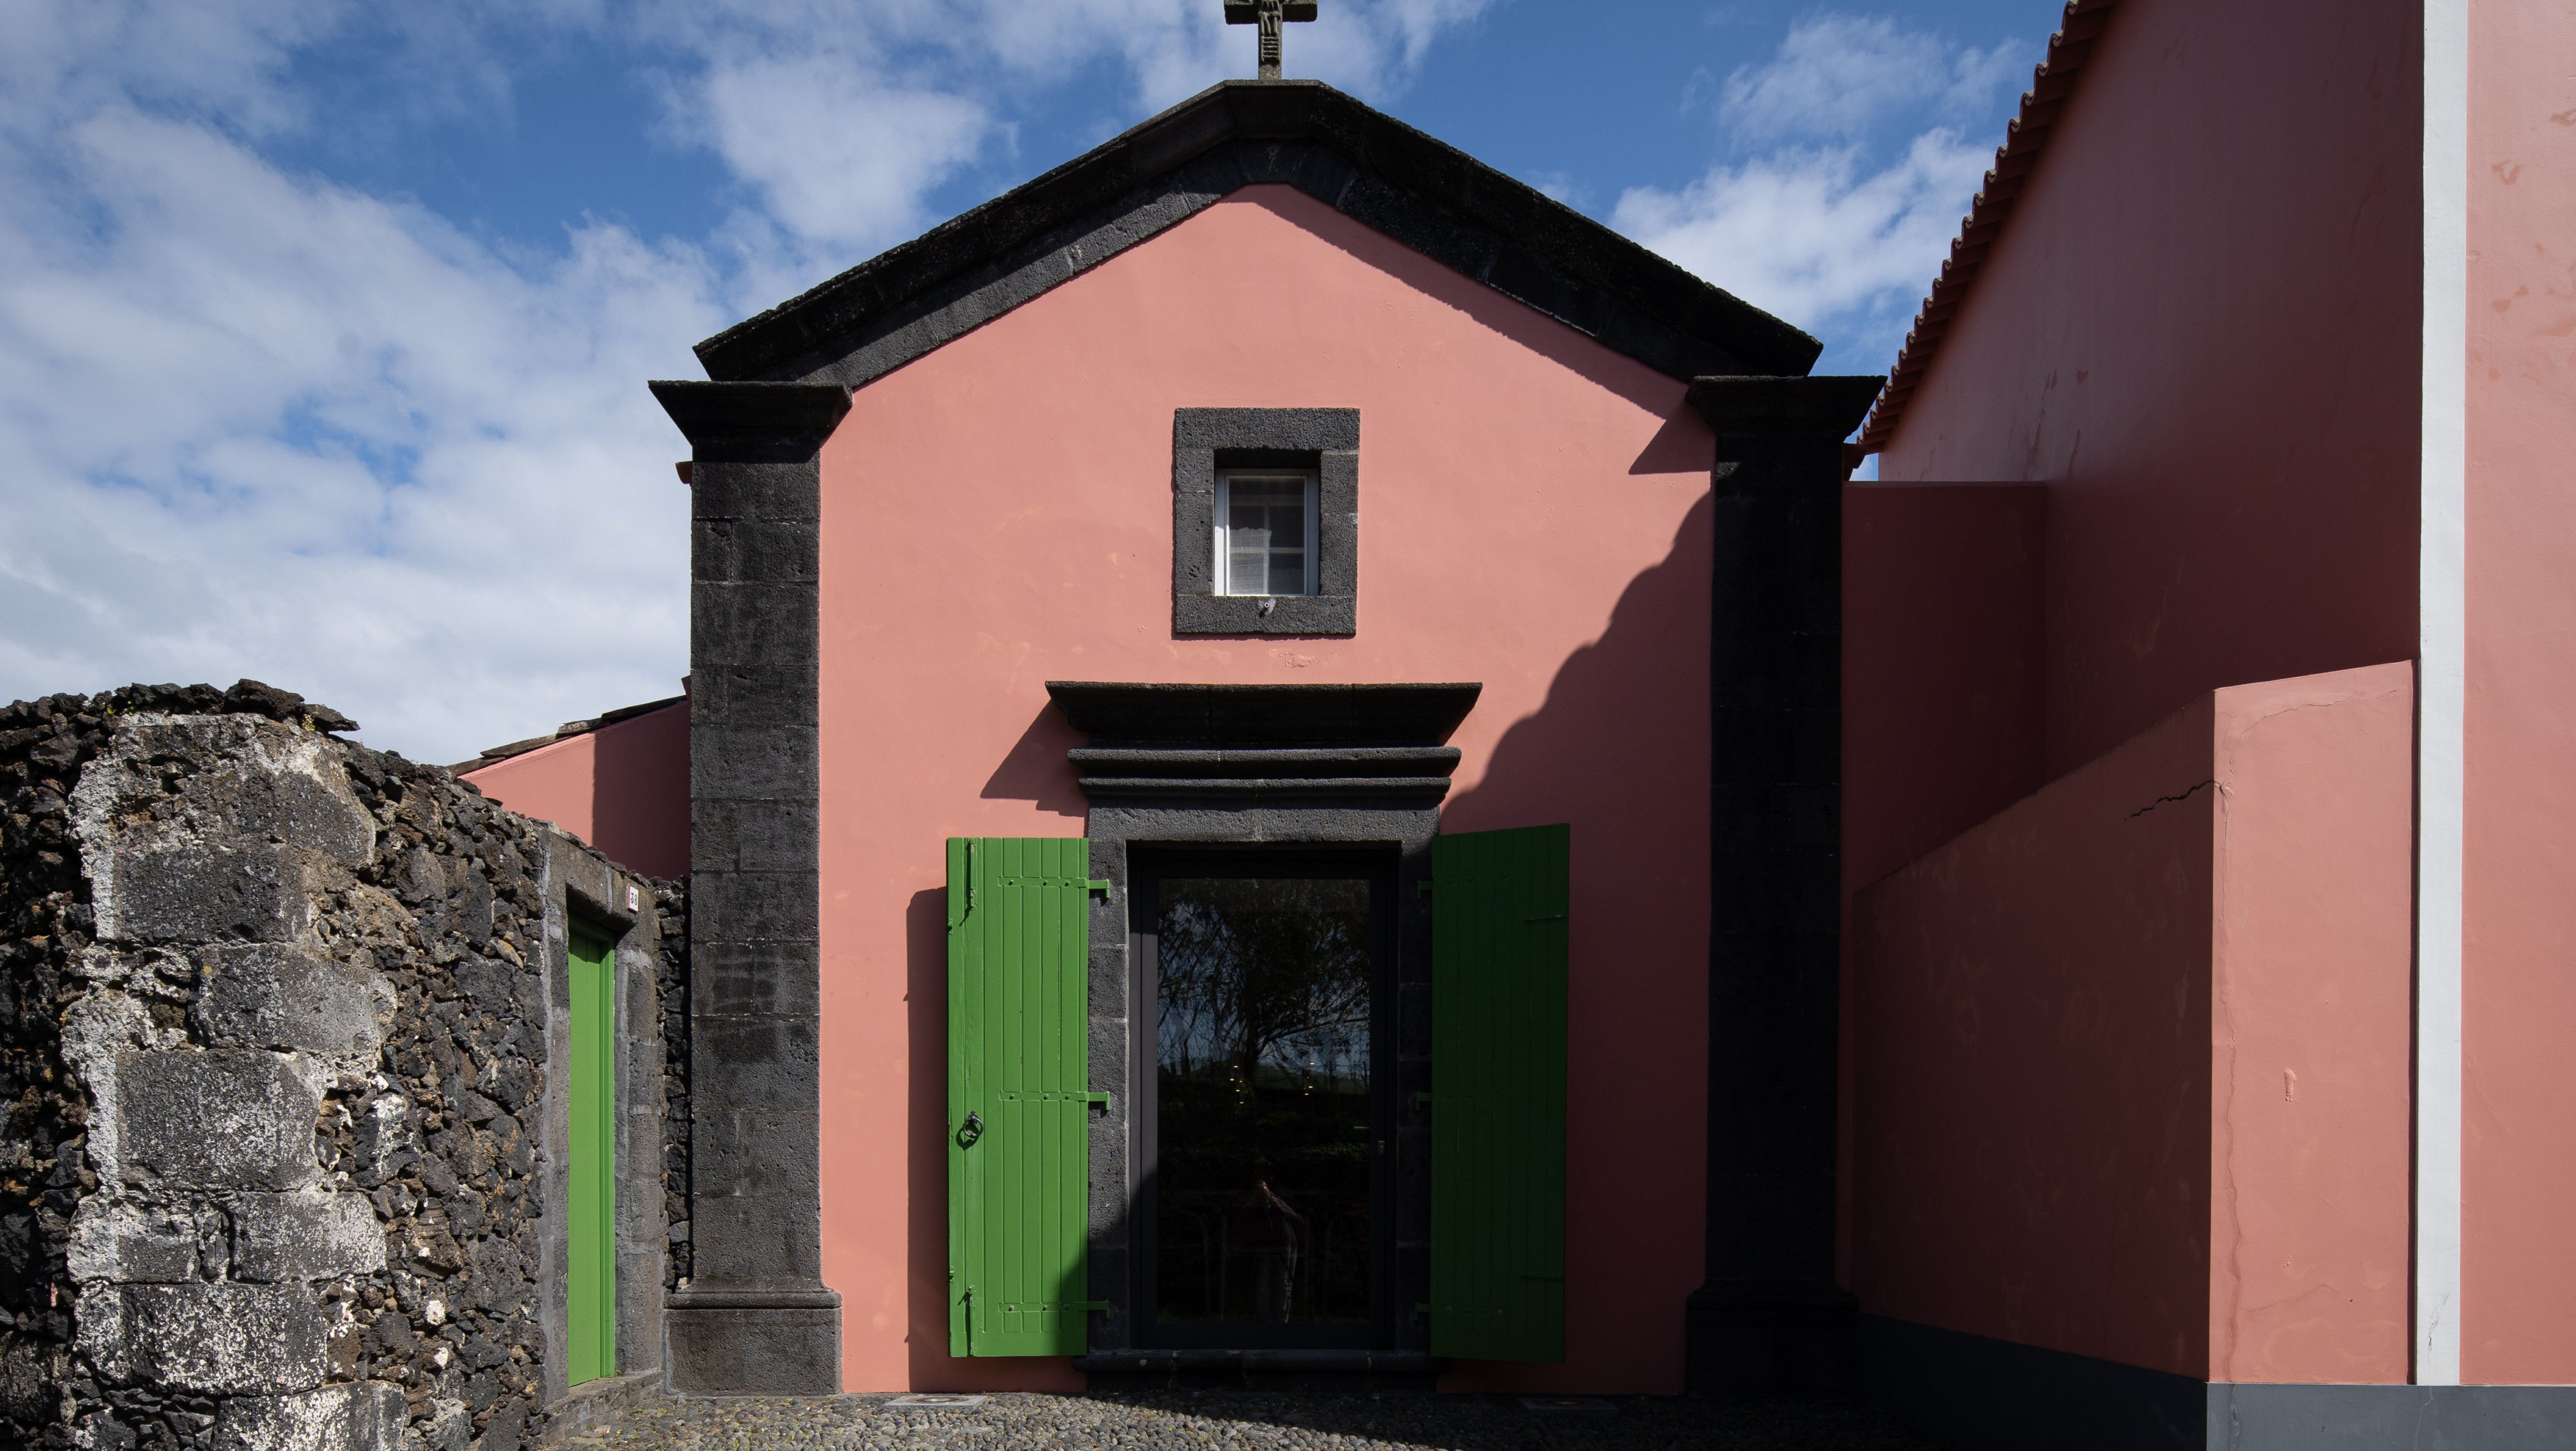 Talvez a máxima síntese da simbiose religião-natureza do trabalho de Paulo Goulart seja a fotografia da capela pintada a cor de rosa com portadas verdes